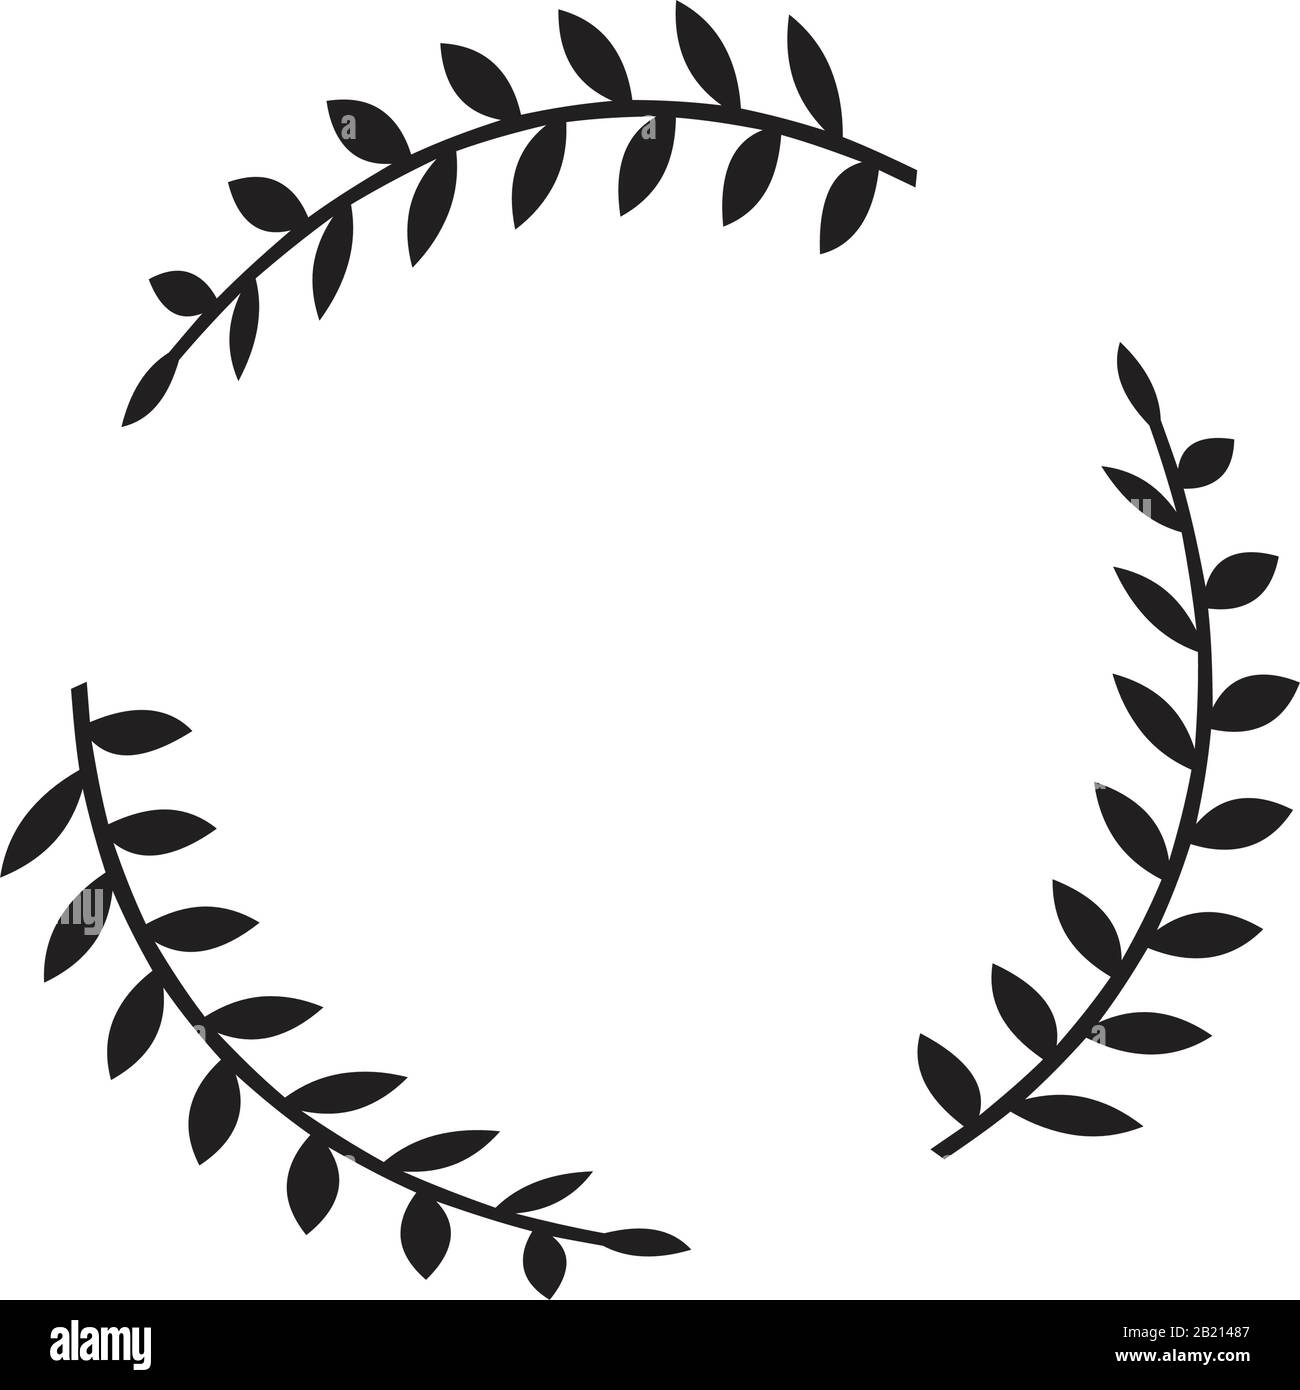 Couronnes grecques et éléments ronds héraldiques avec silhouette circulaire noire. Ensemble de laurier, figue et olive, symboles de victoire avec feuilles et cadres illu Illustration de Vecteur